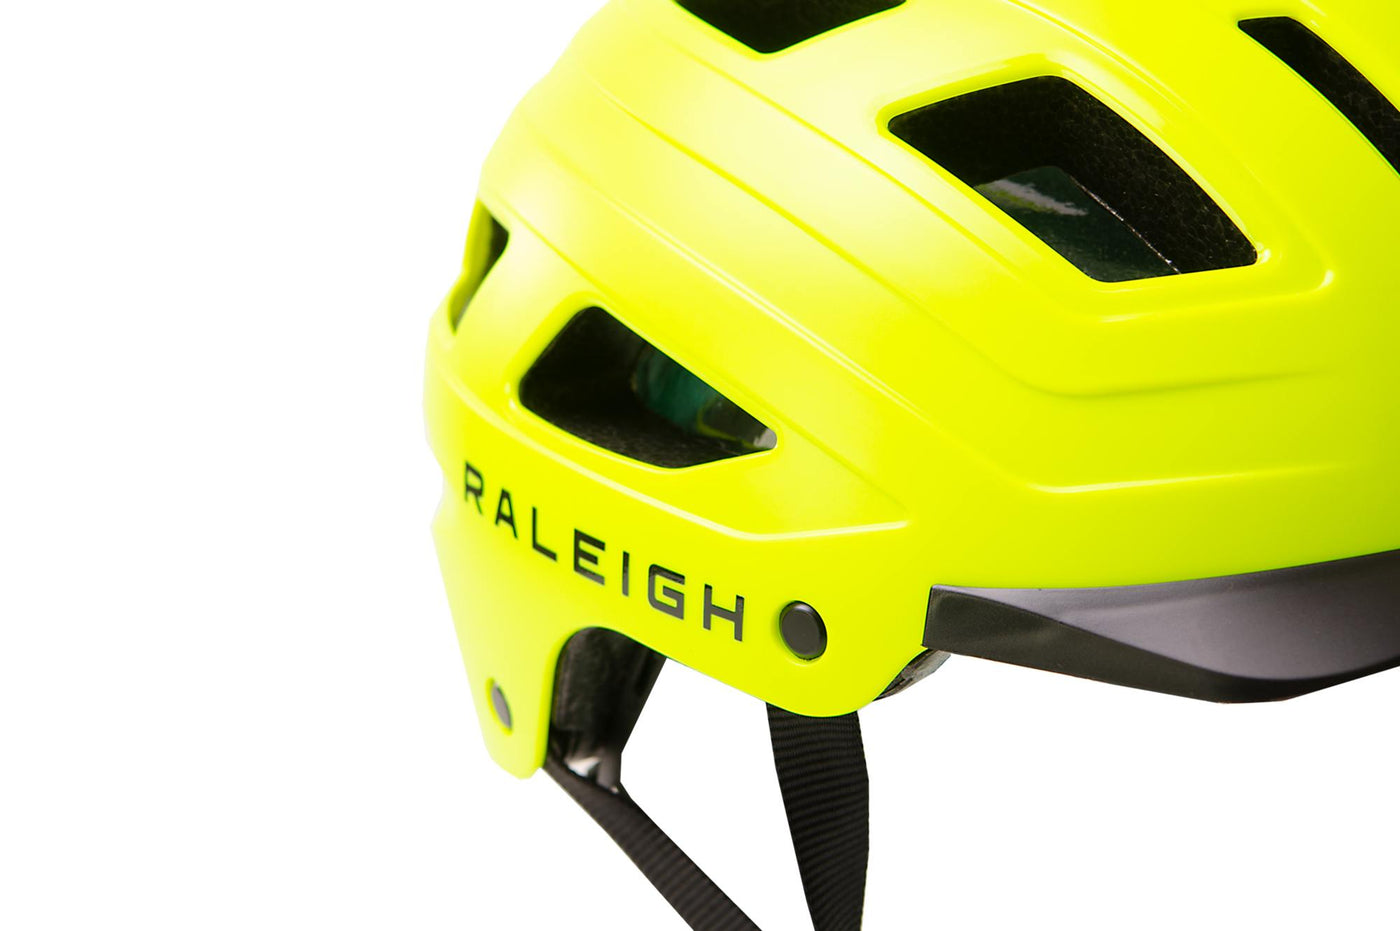 Raleigh Glyde Urban Bike Helmet